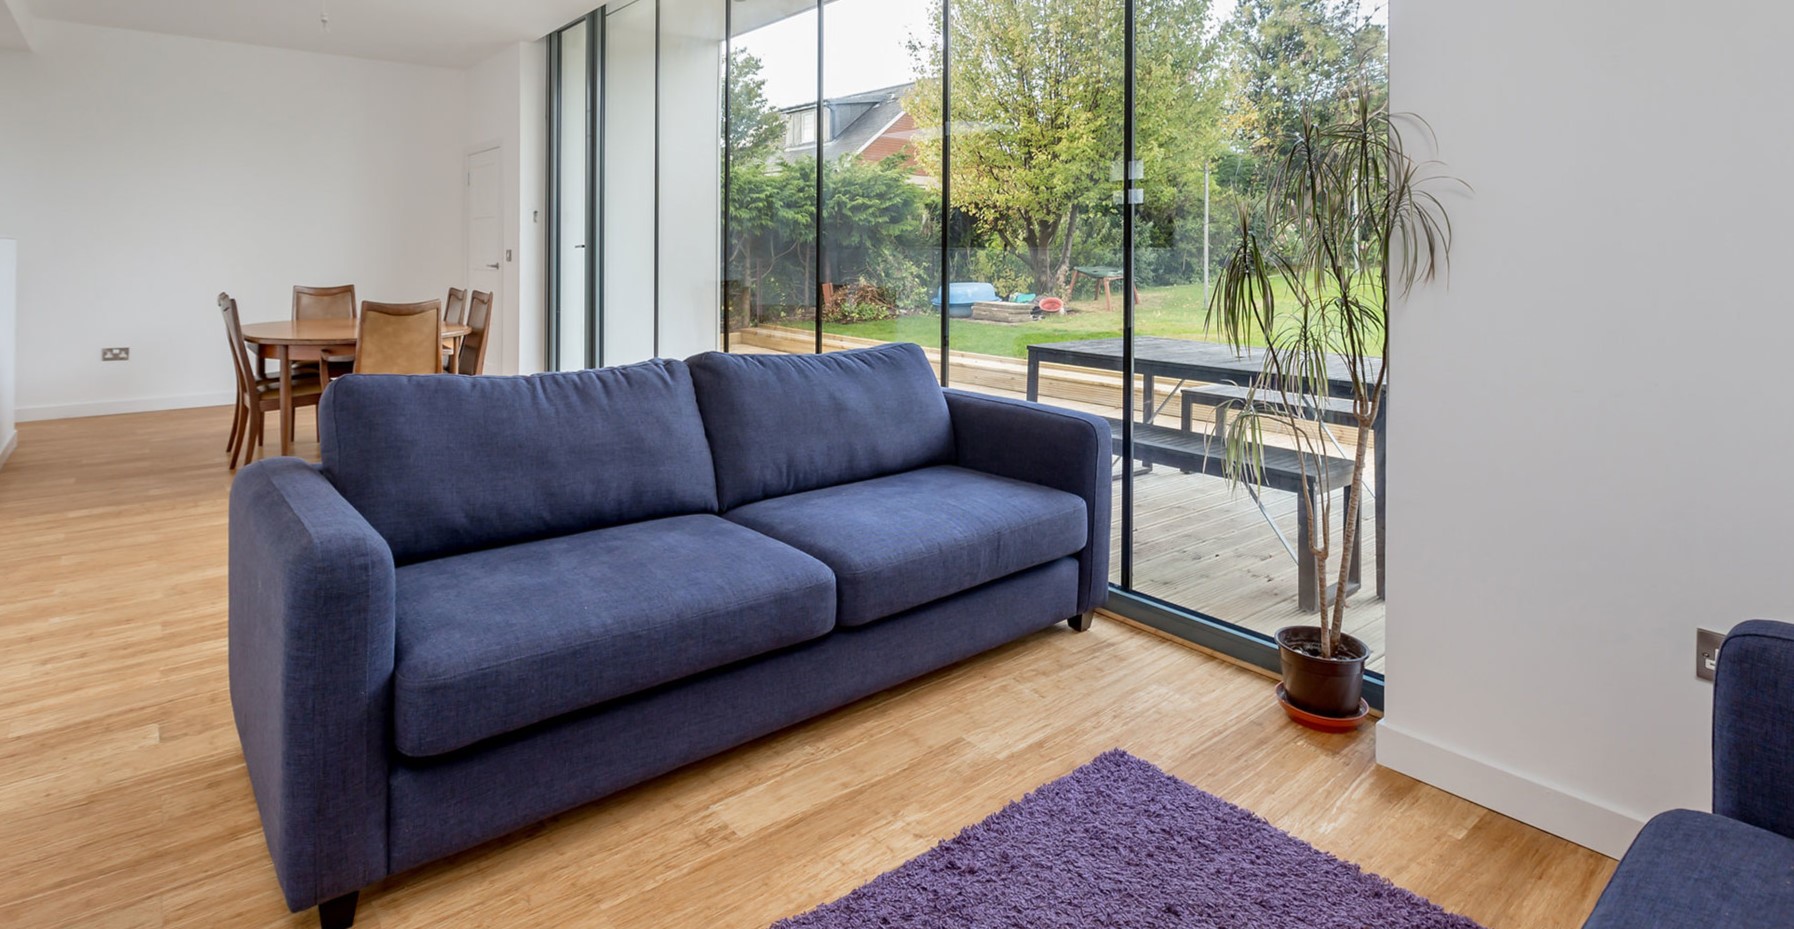 Ортопедический диван с синей обивкой можно использовать в качестве интерьерного акцента в гостиной